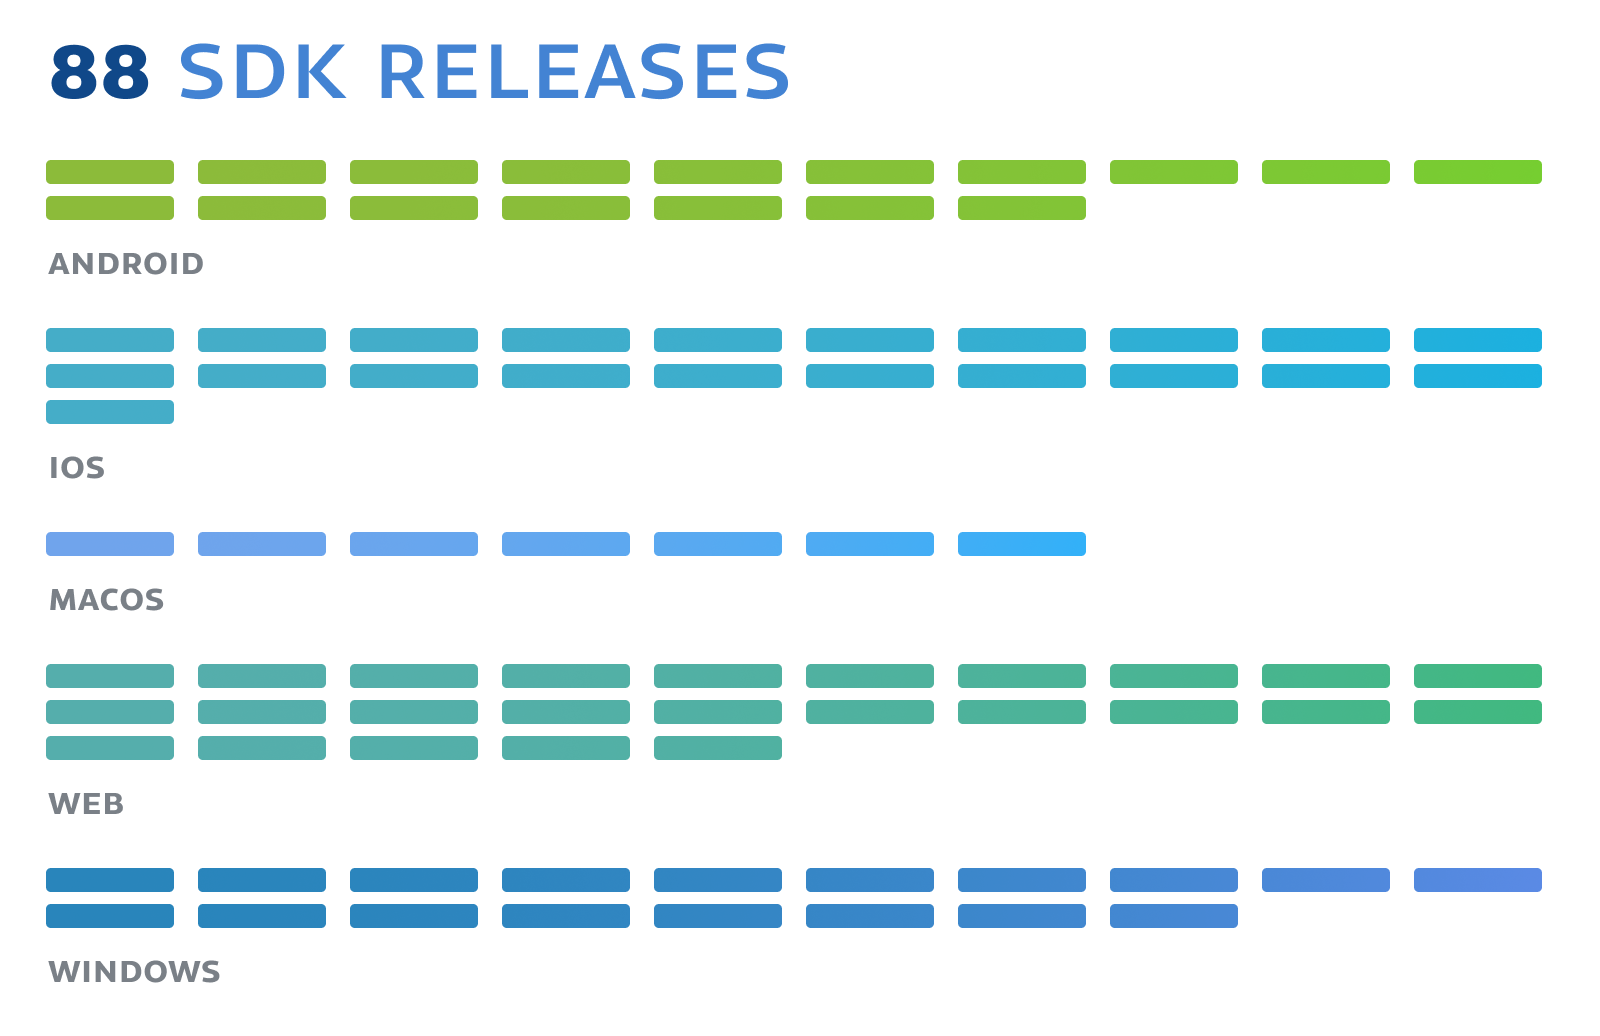 SDK Releases: 88